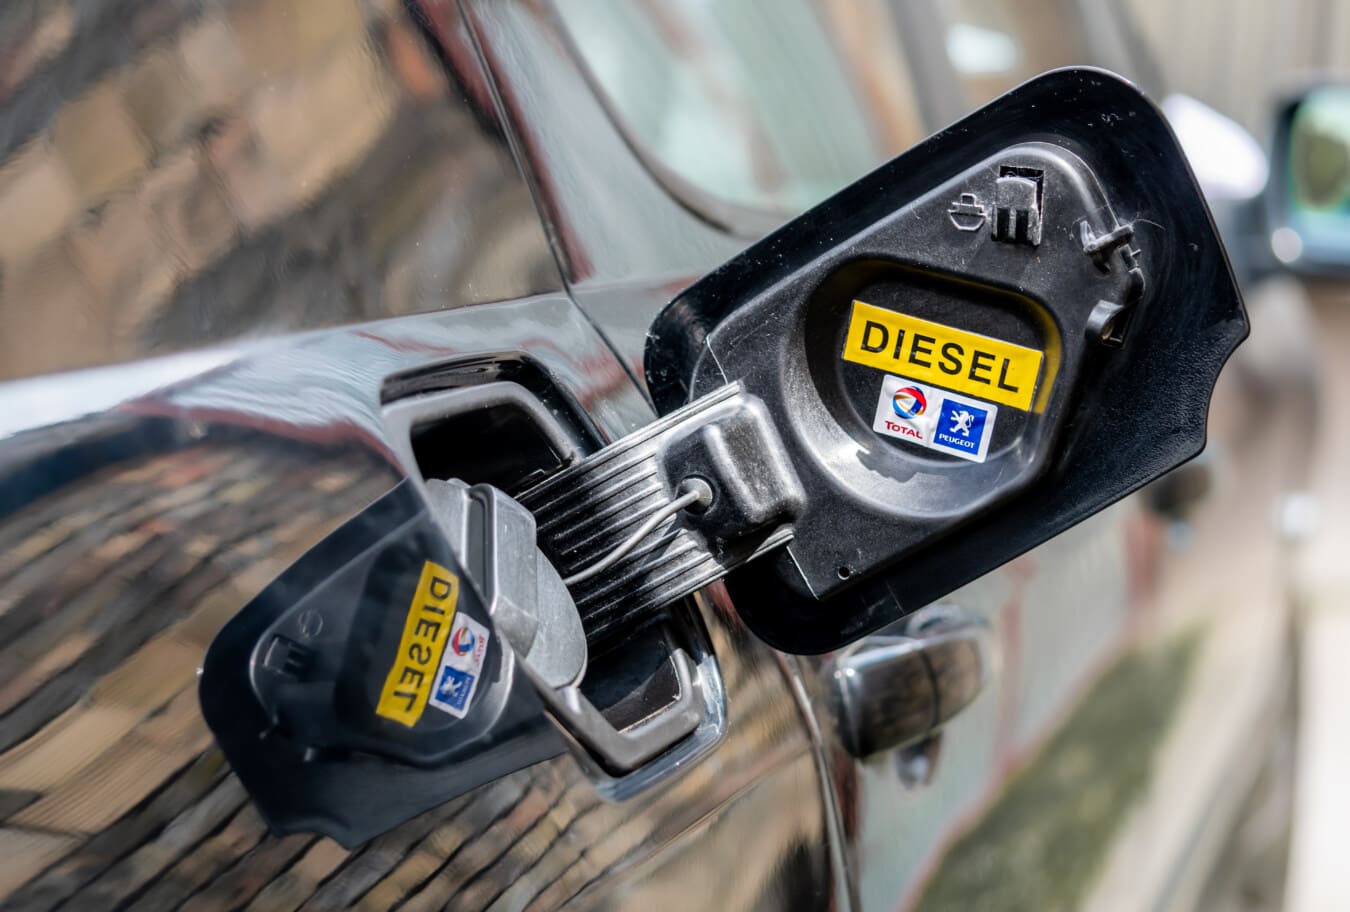 euro diesel, diesel, reservoir, car, oil, consumption, gasoline, vehicle, petroleum, nozzle